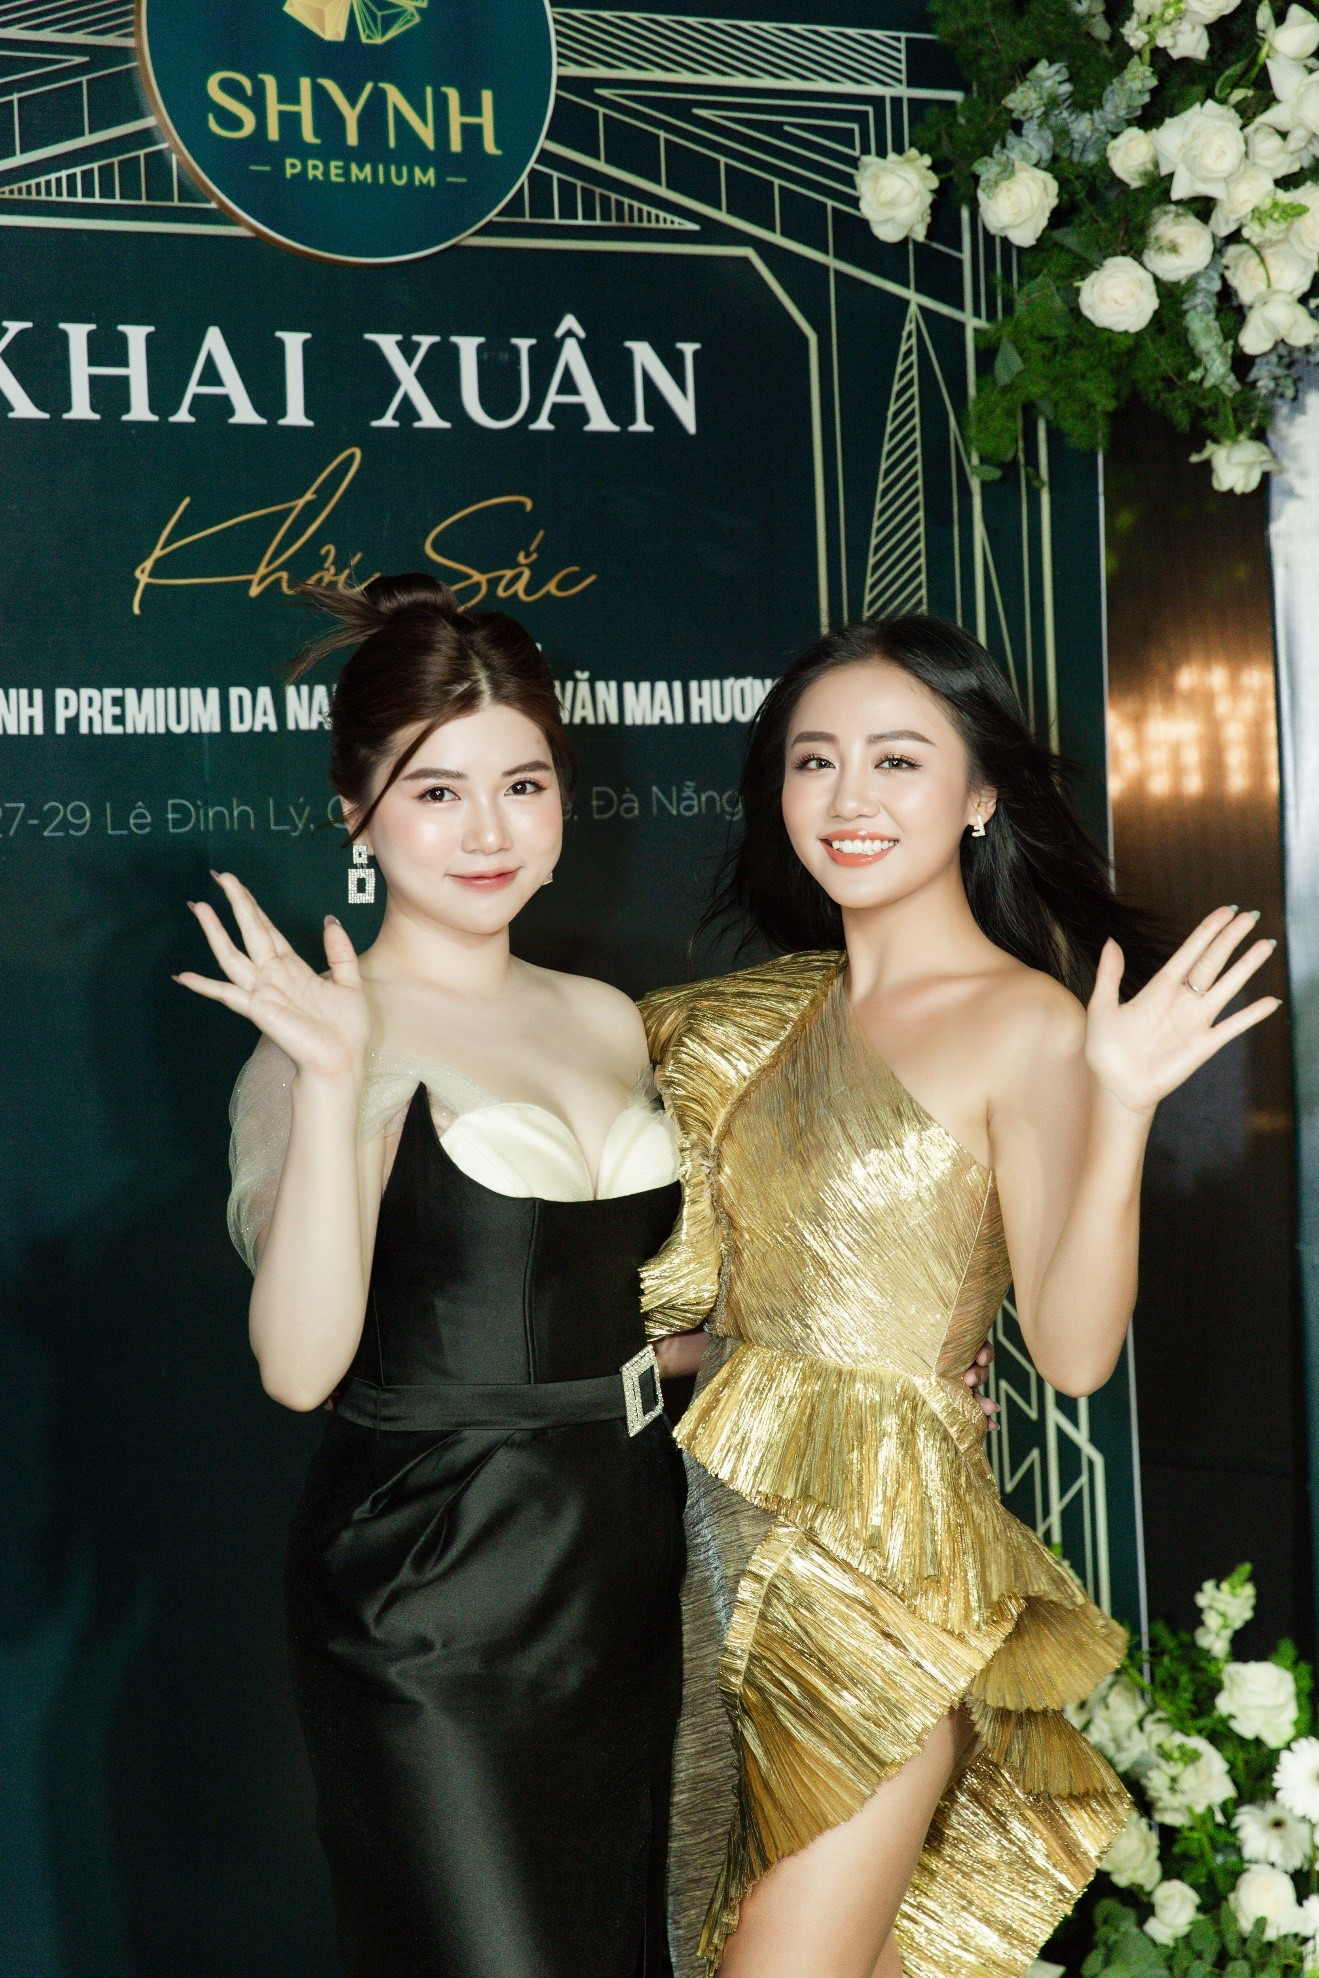  Ca sĩ Văn Mai Hương diện chiếc váy vàng gold khéo tôn sắc vóc của cô trong đêm tiệc 